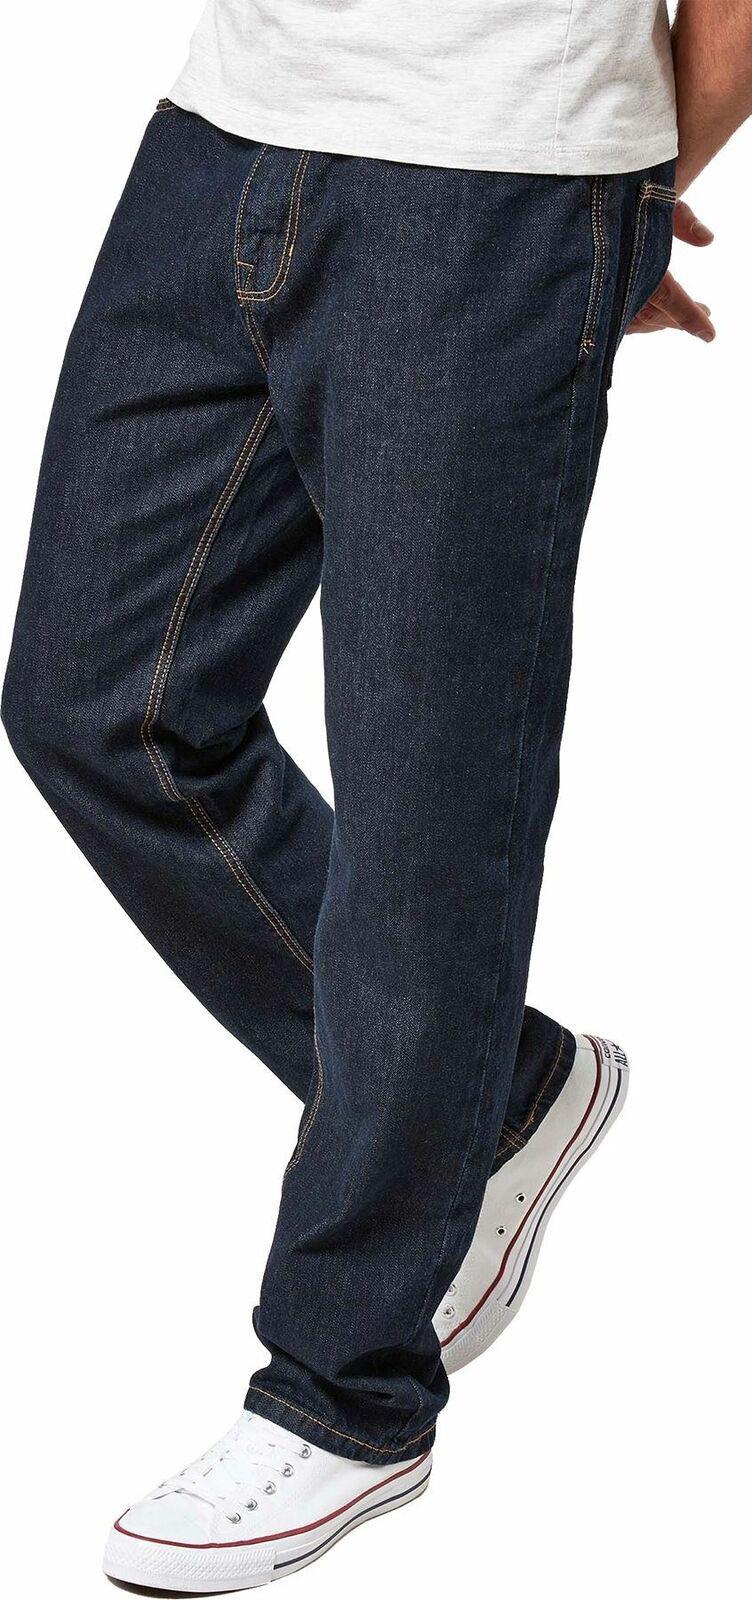 Next Men's Slim-Fit Cotton Jeans